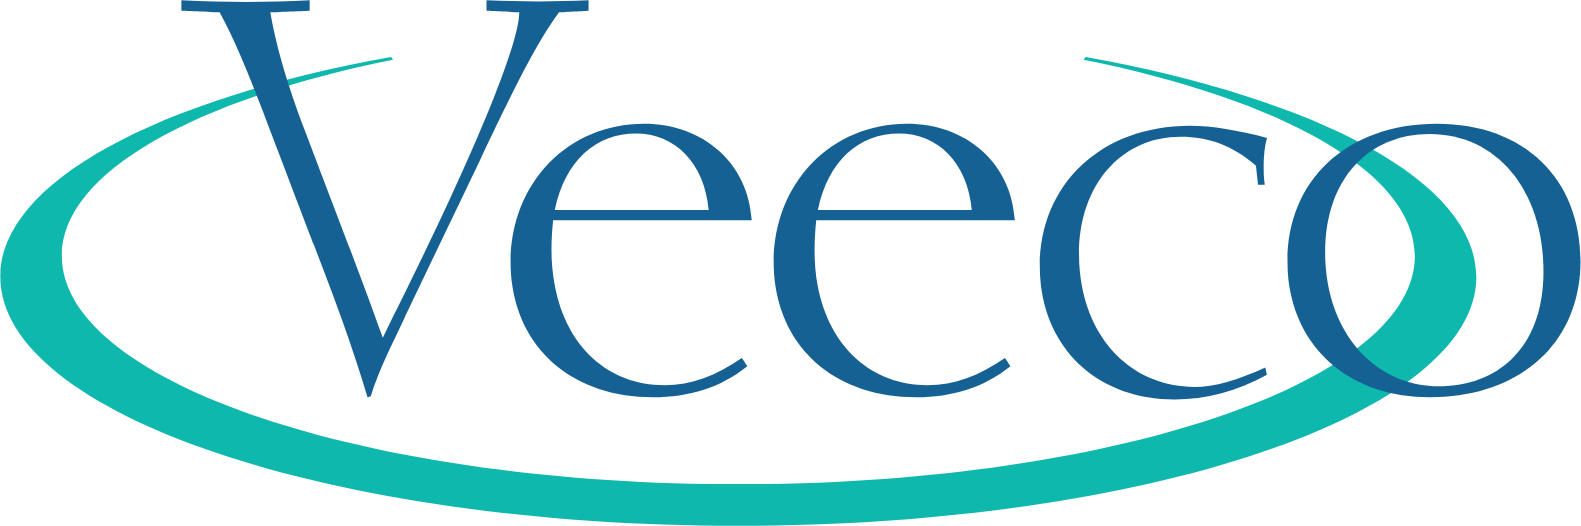 Veeco
 Logo (transparentes PNG)